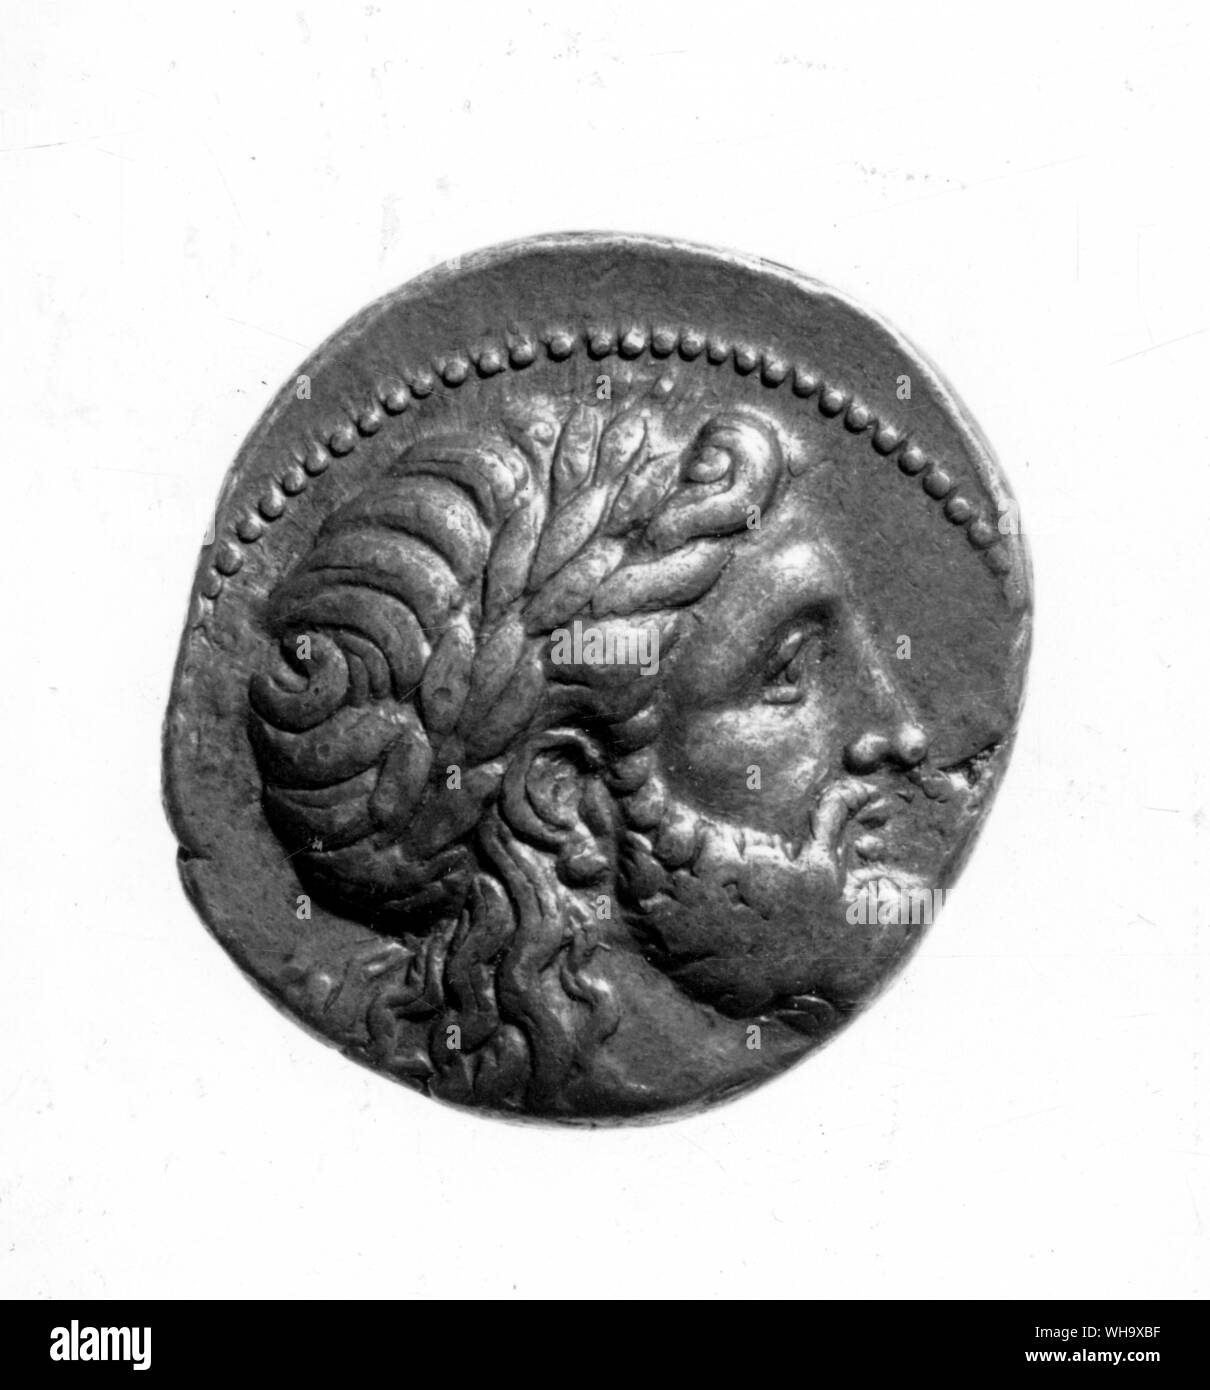 Moneta egiziana di Alexander, con testa di Zeus. Foto Stock